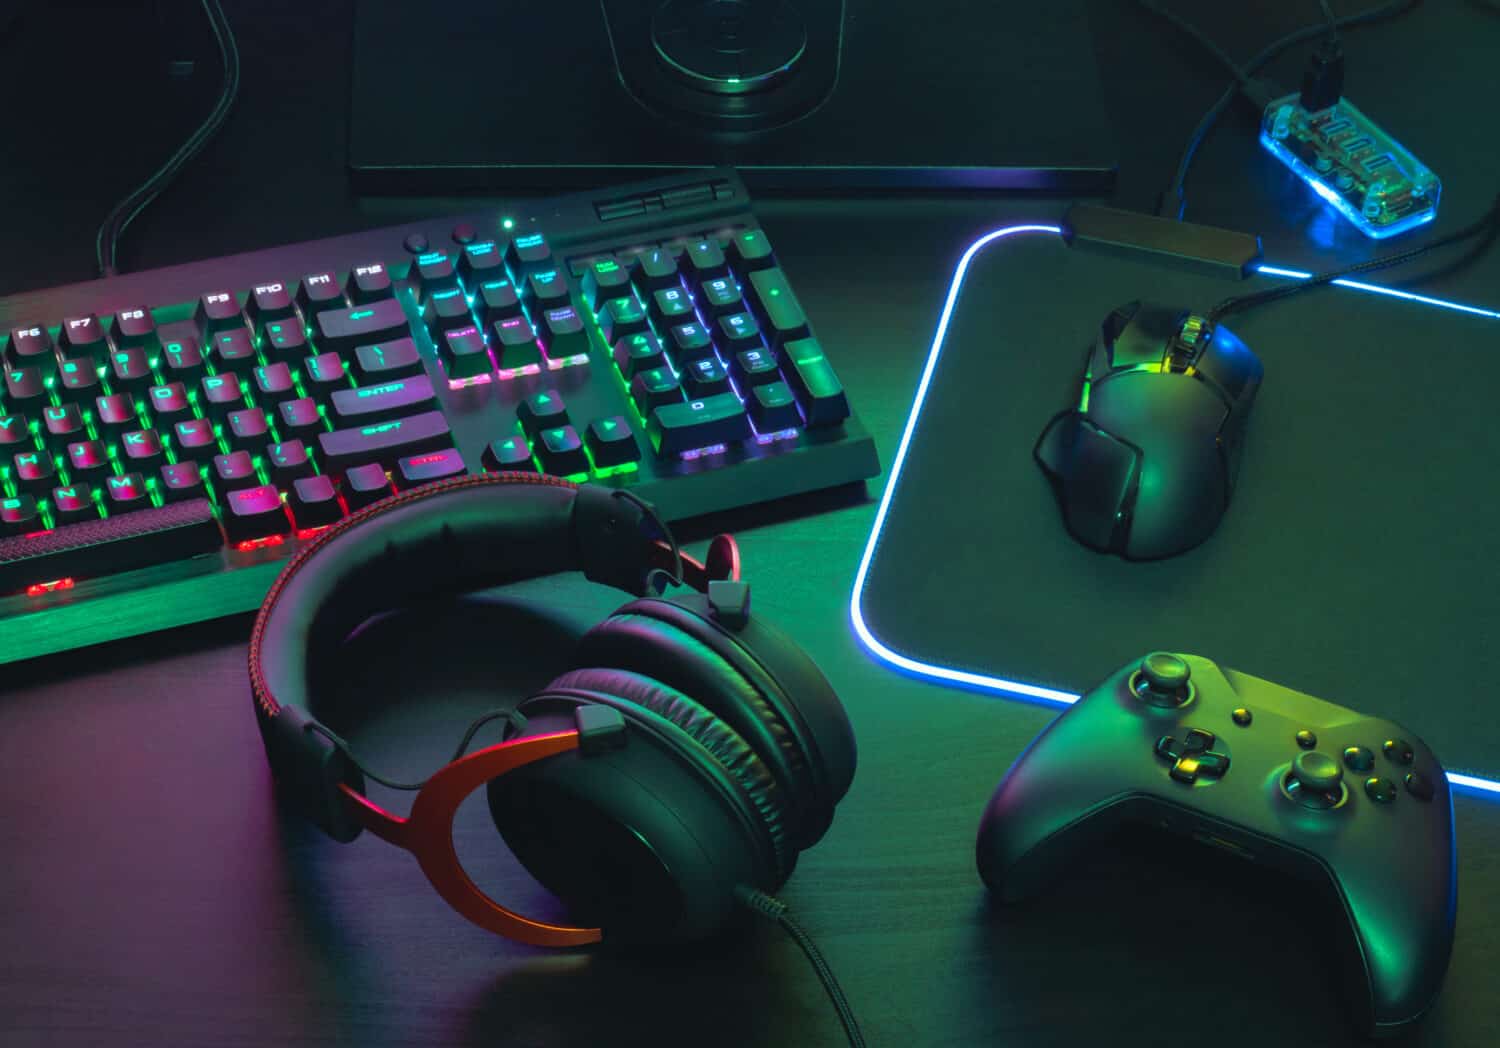 Koncept pracovného priestoru hráča, Zobraziť herné vybavenie, myš, klávesnicu, joystick, náhlavnú súpravu, mobilný joystick, slúchadlá v ušiach a podložka myši s farbou RGB na čiernom stole